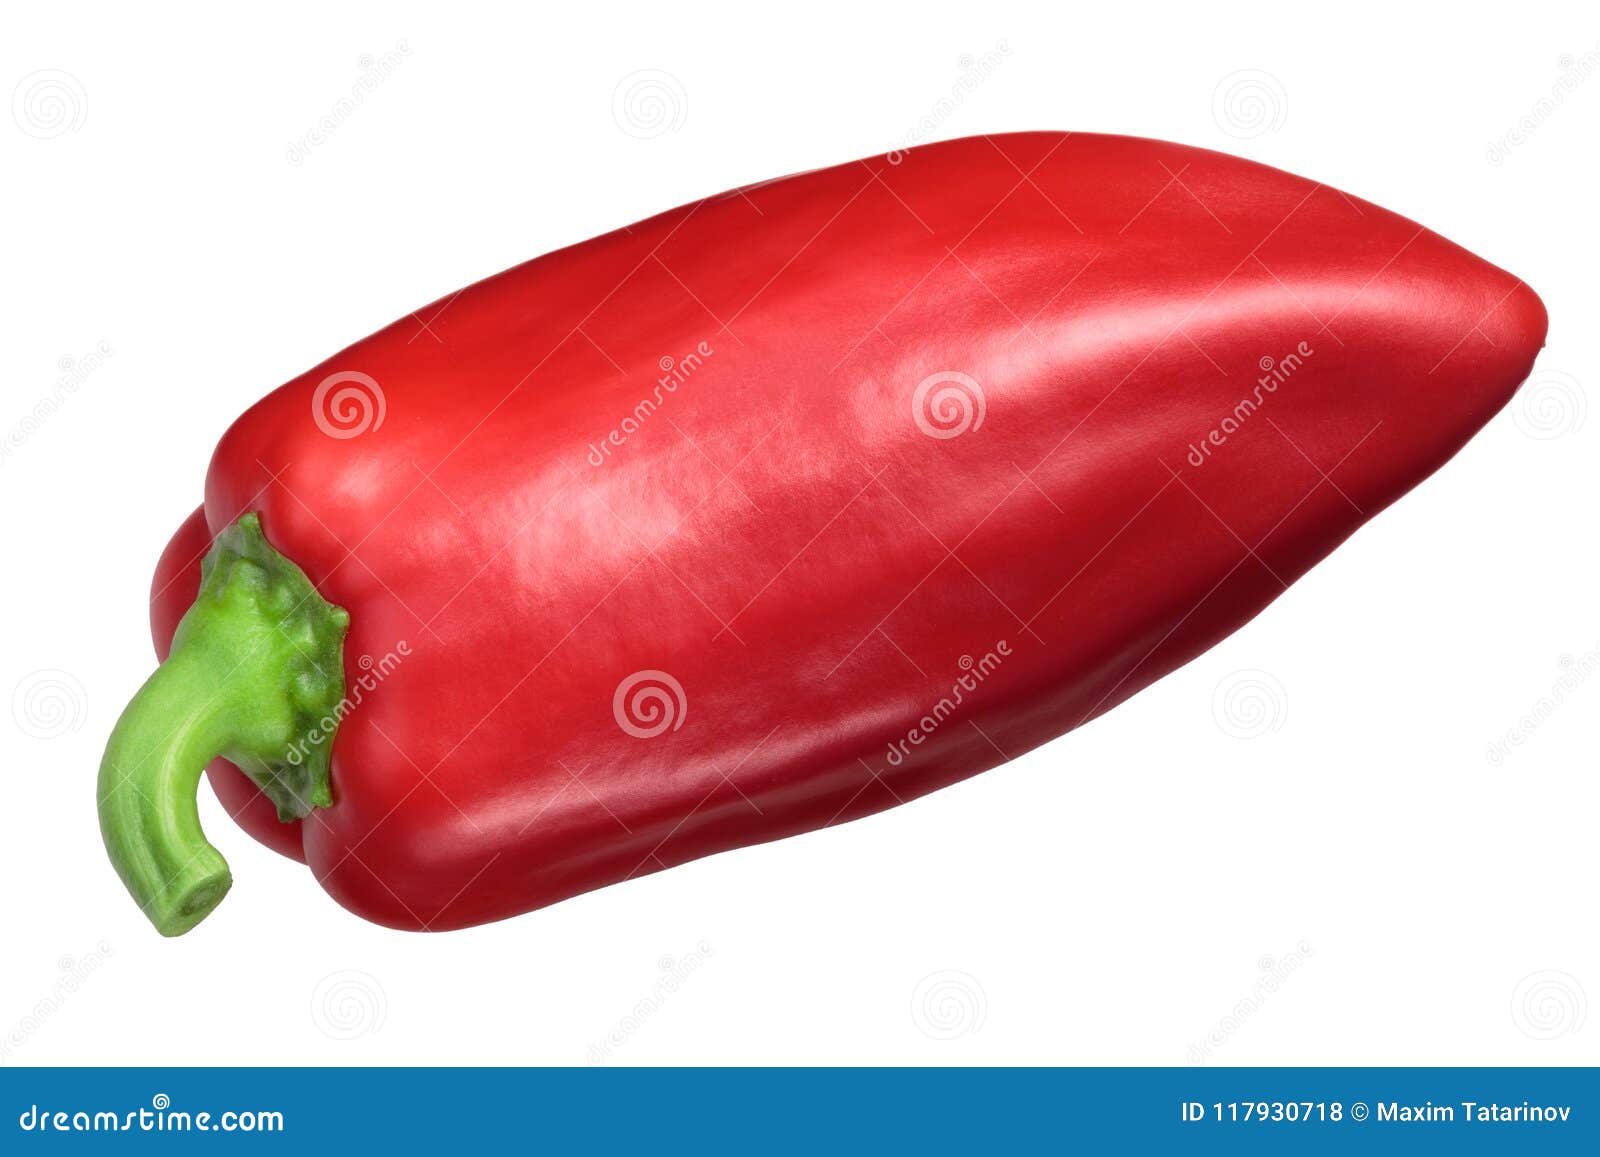 red bell pepper grueso de plaza